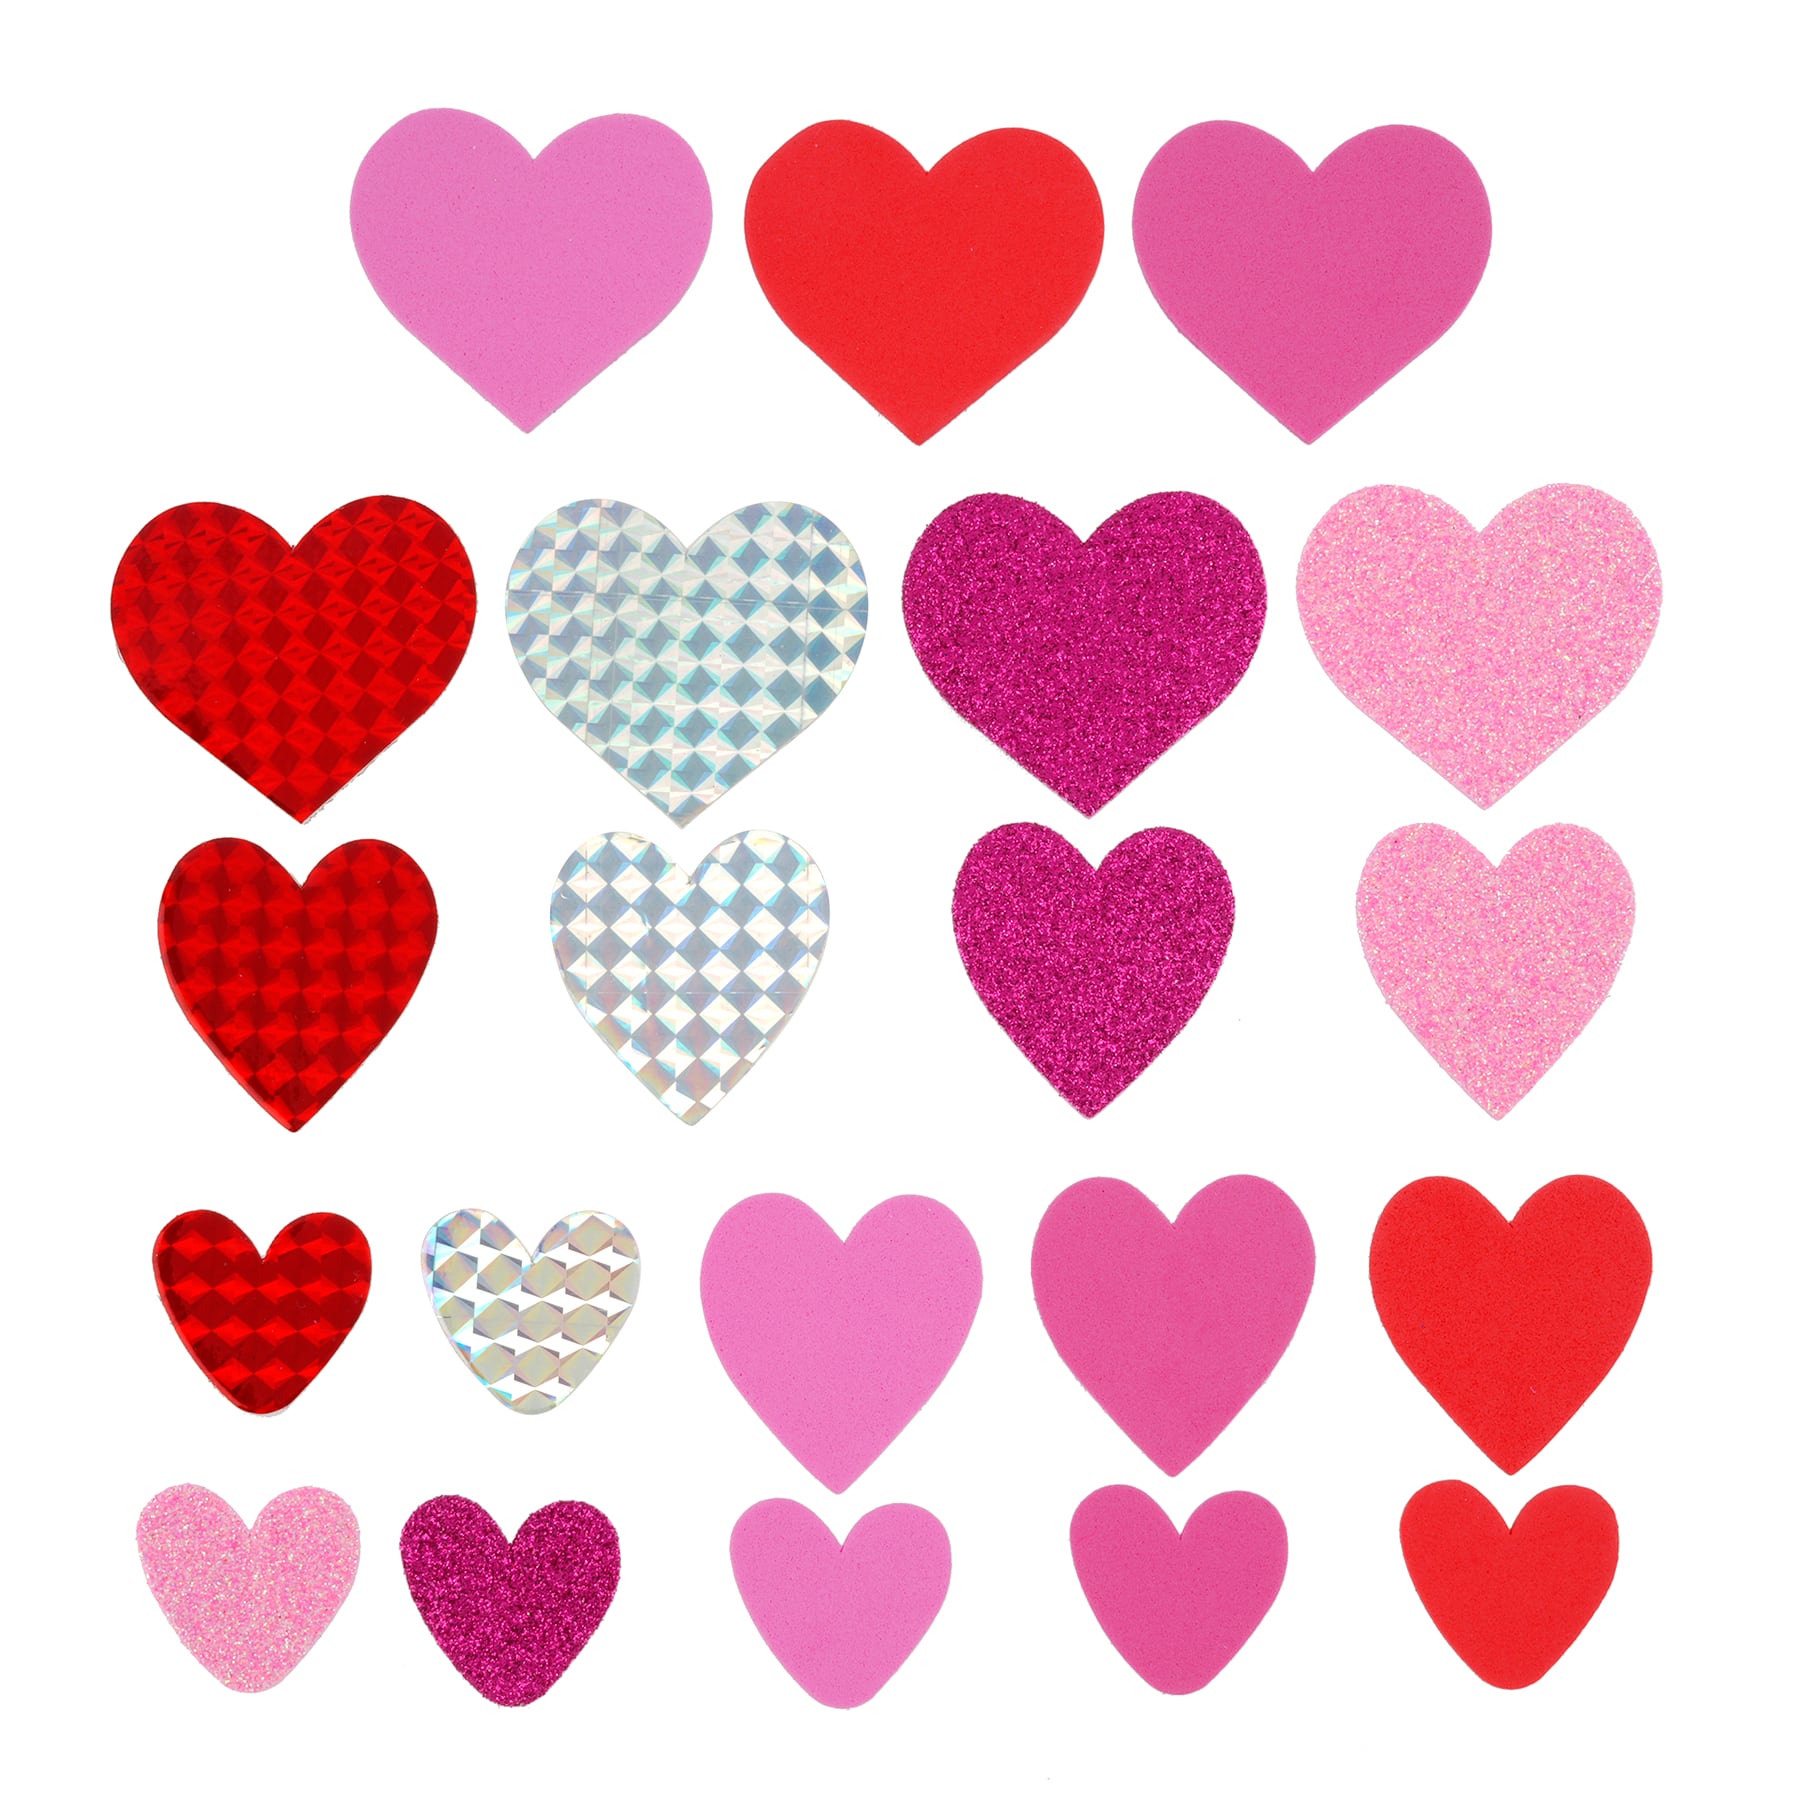  Valentine's Day Stickers,Valentine's Day Glitter Heart